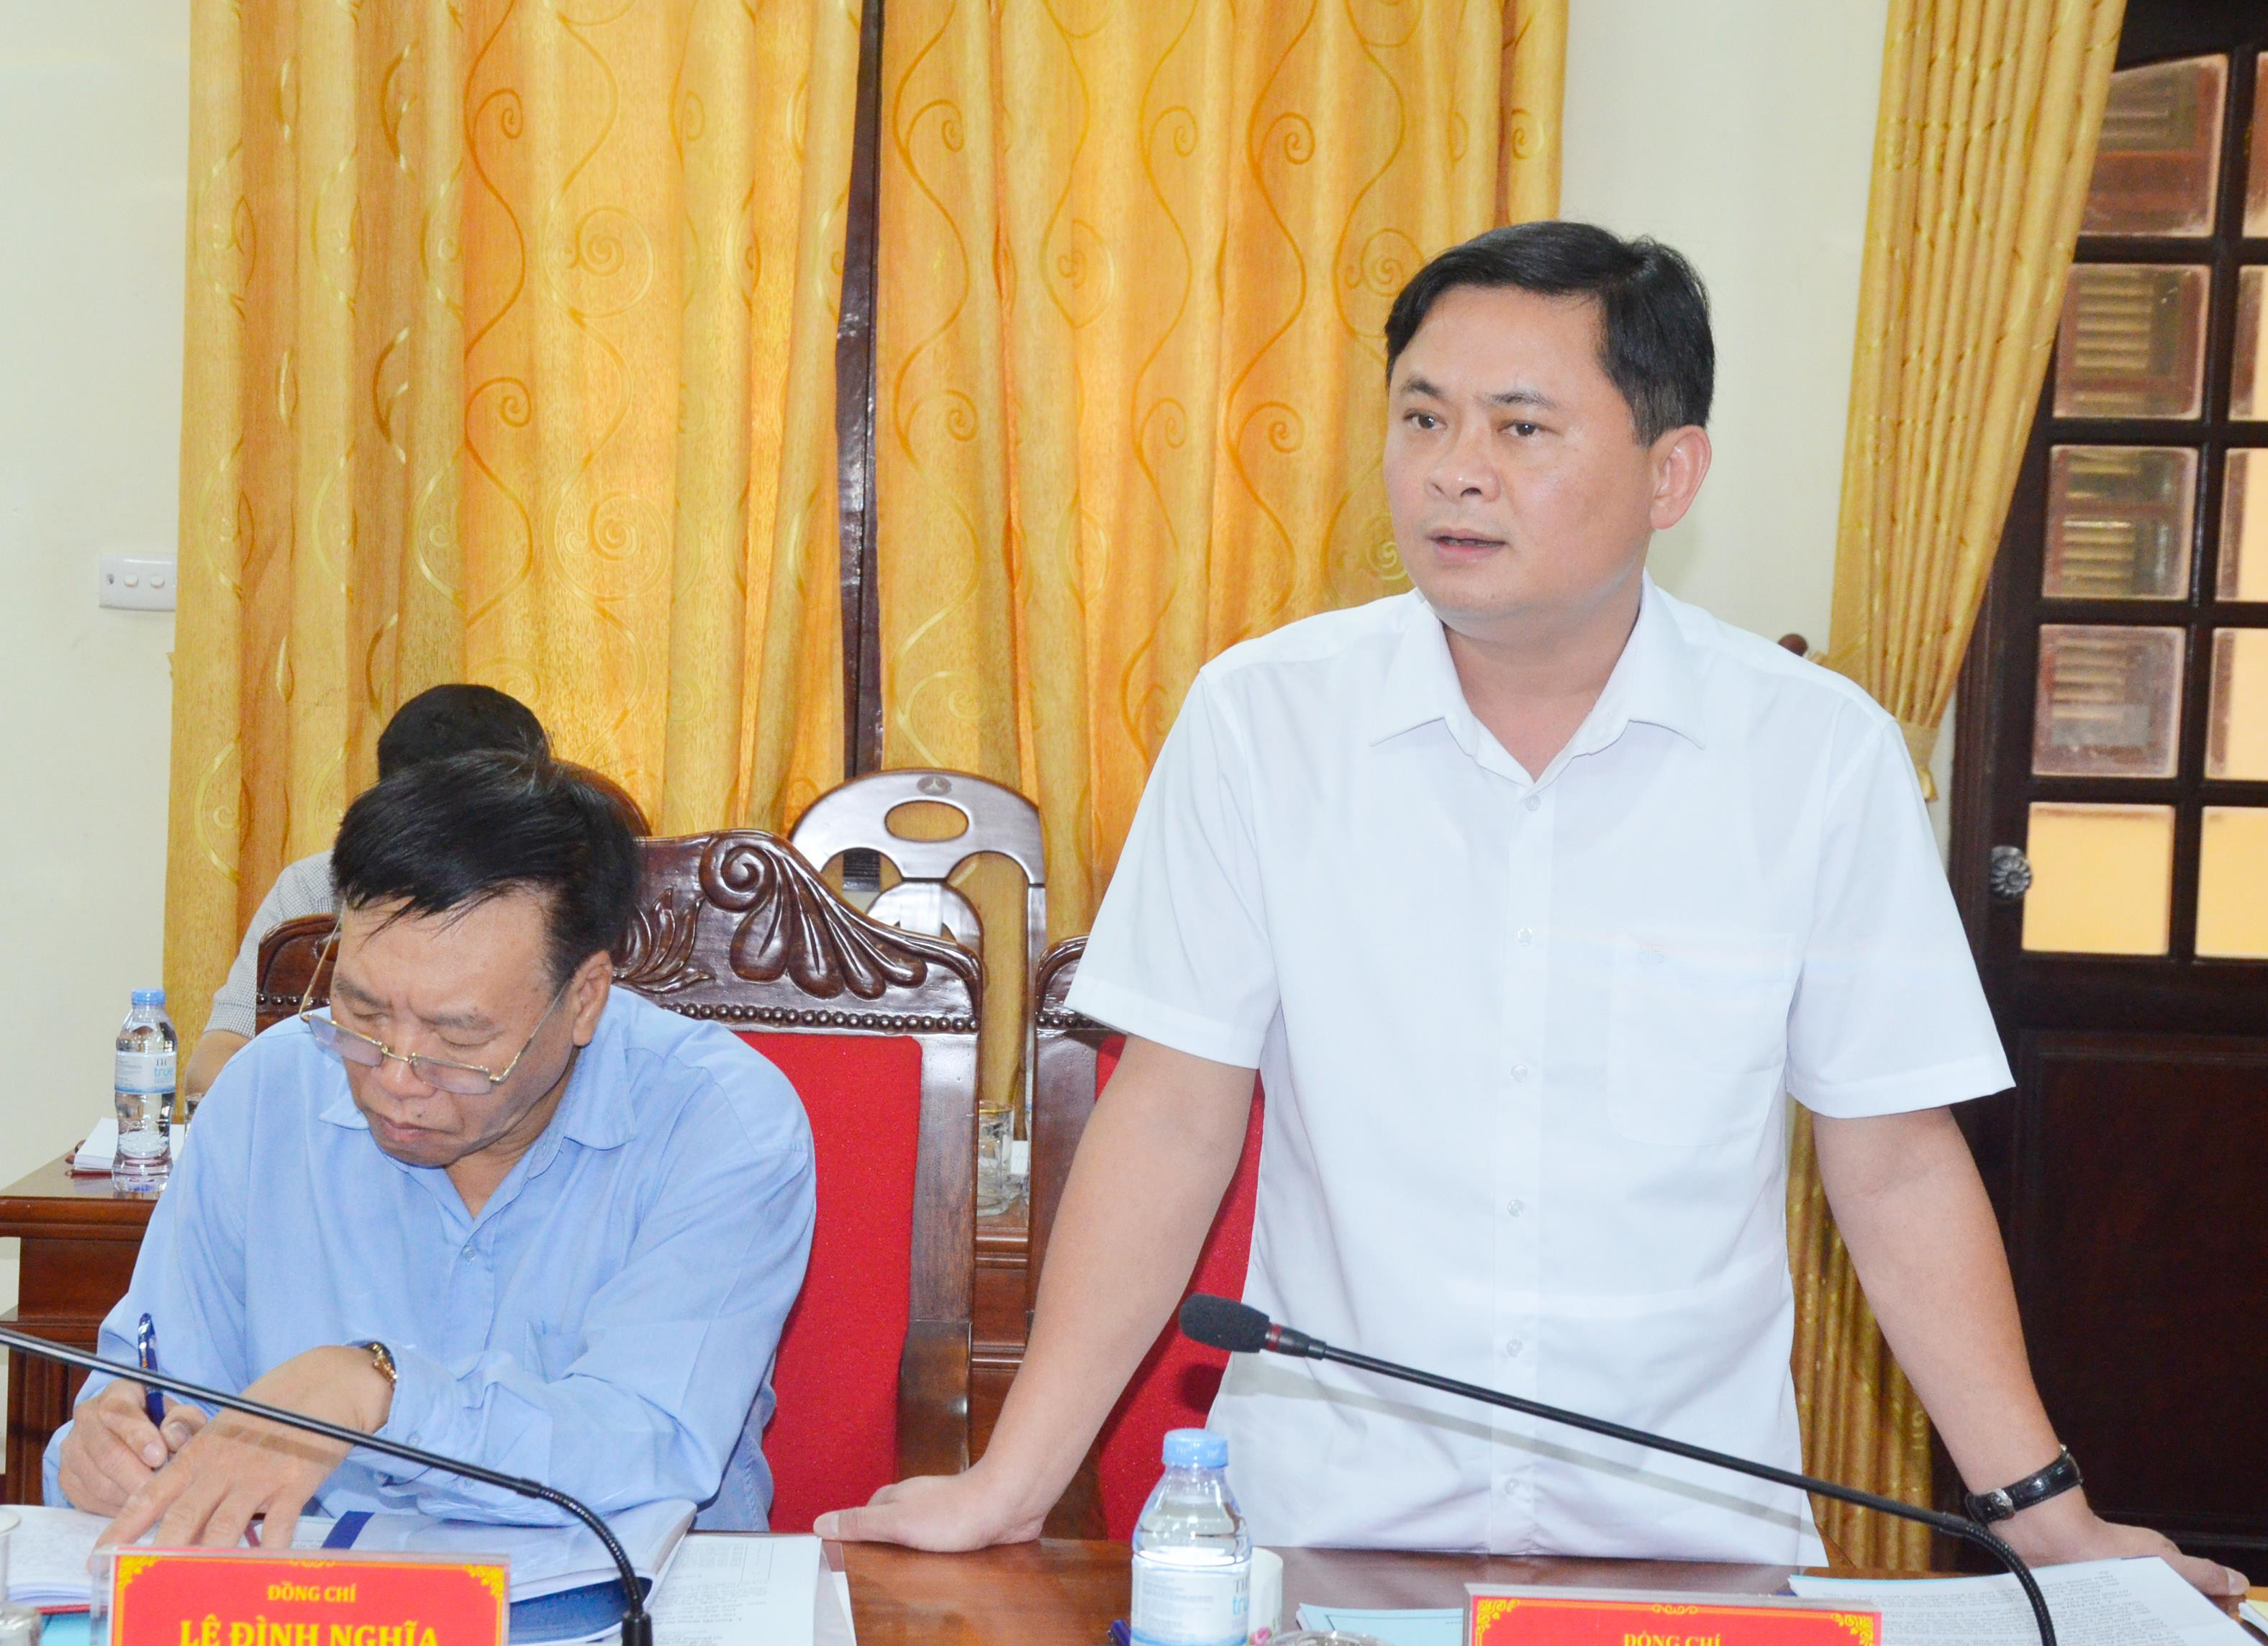 Chủ tịch UBND tỉnh Thái Thanh Quý phát biểu tại phiên họp. Ảnh: Thanh Lê